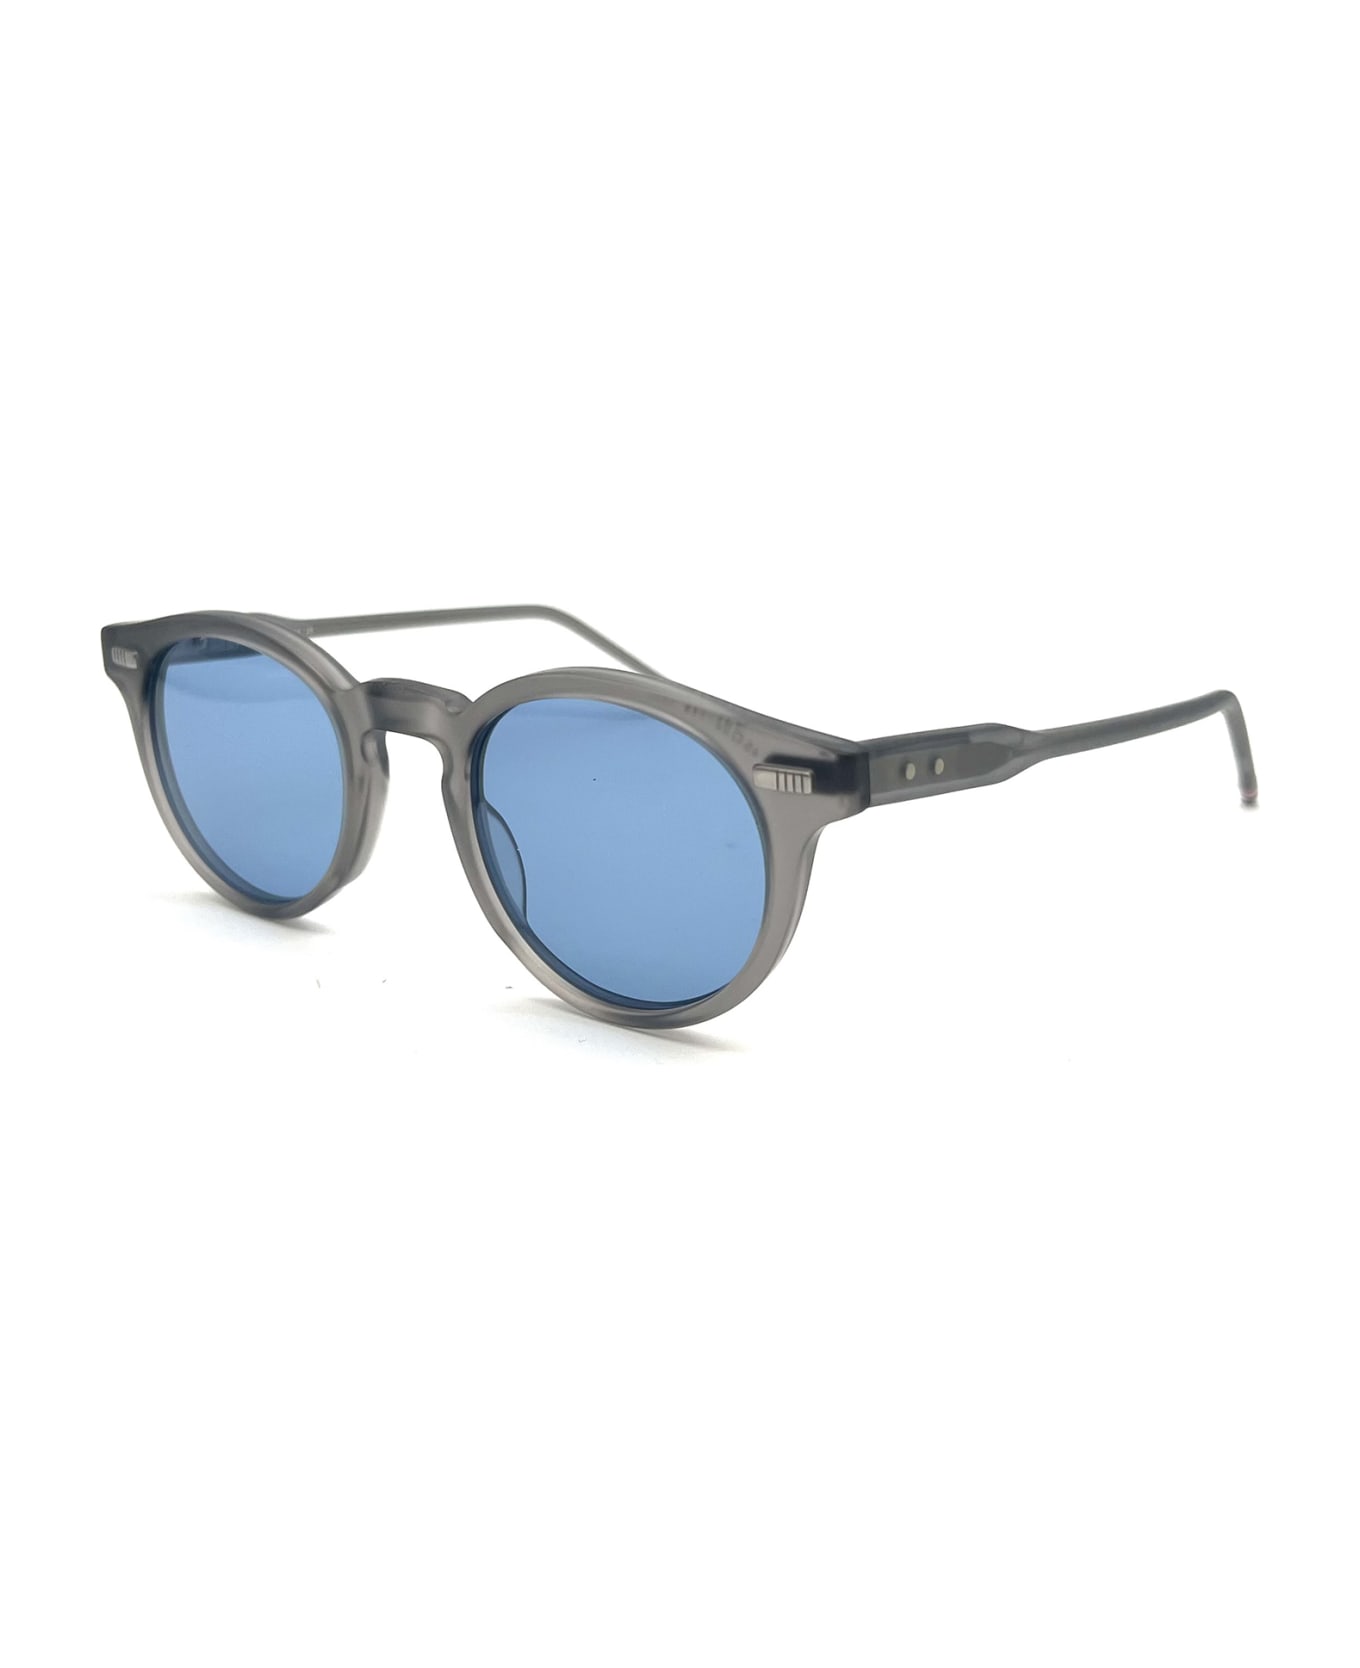 Thom Browne UES404A/G0002 Sunglasses - Light Grey サングラス